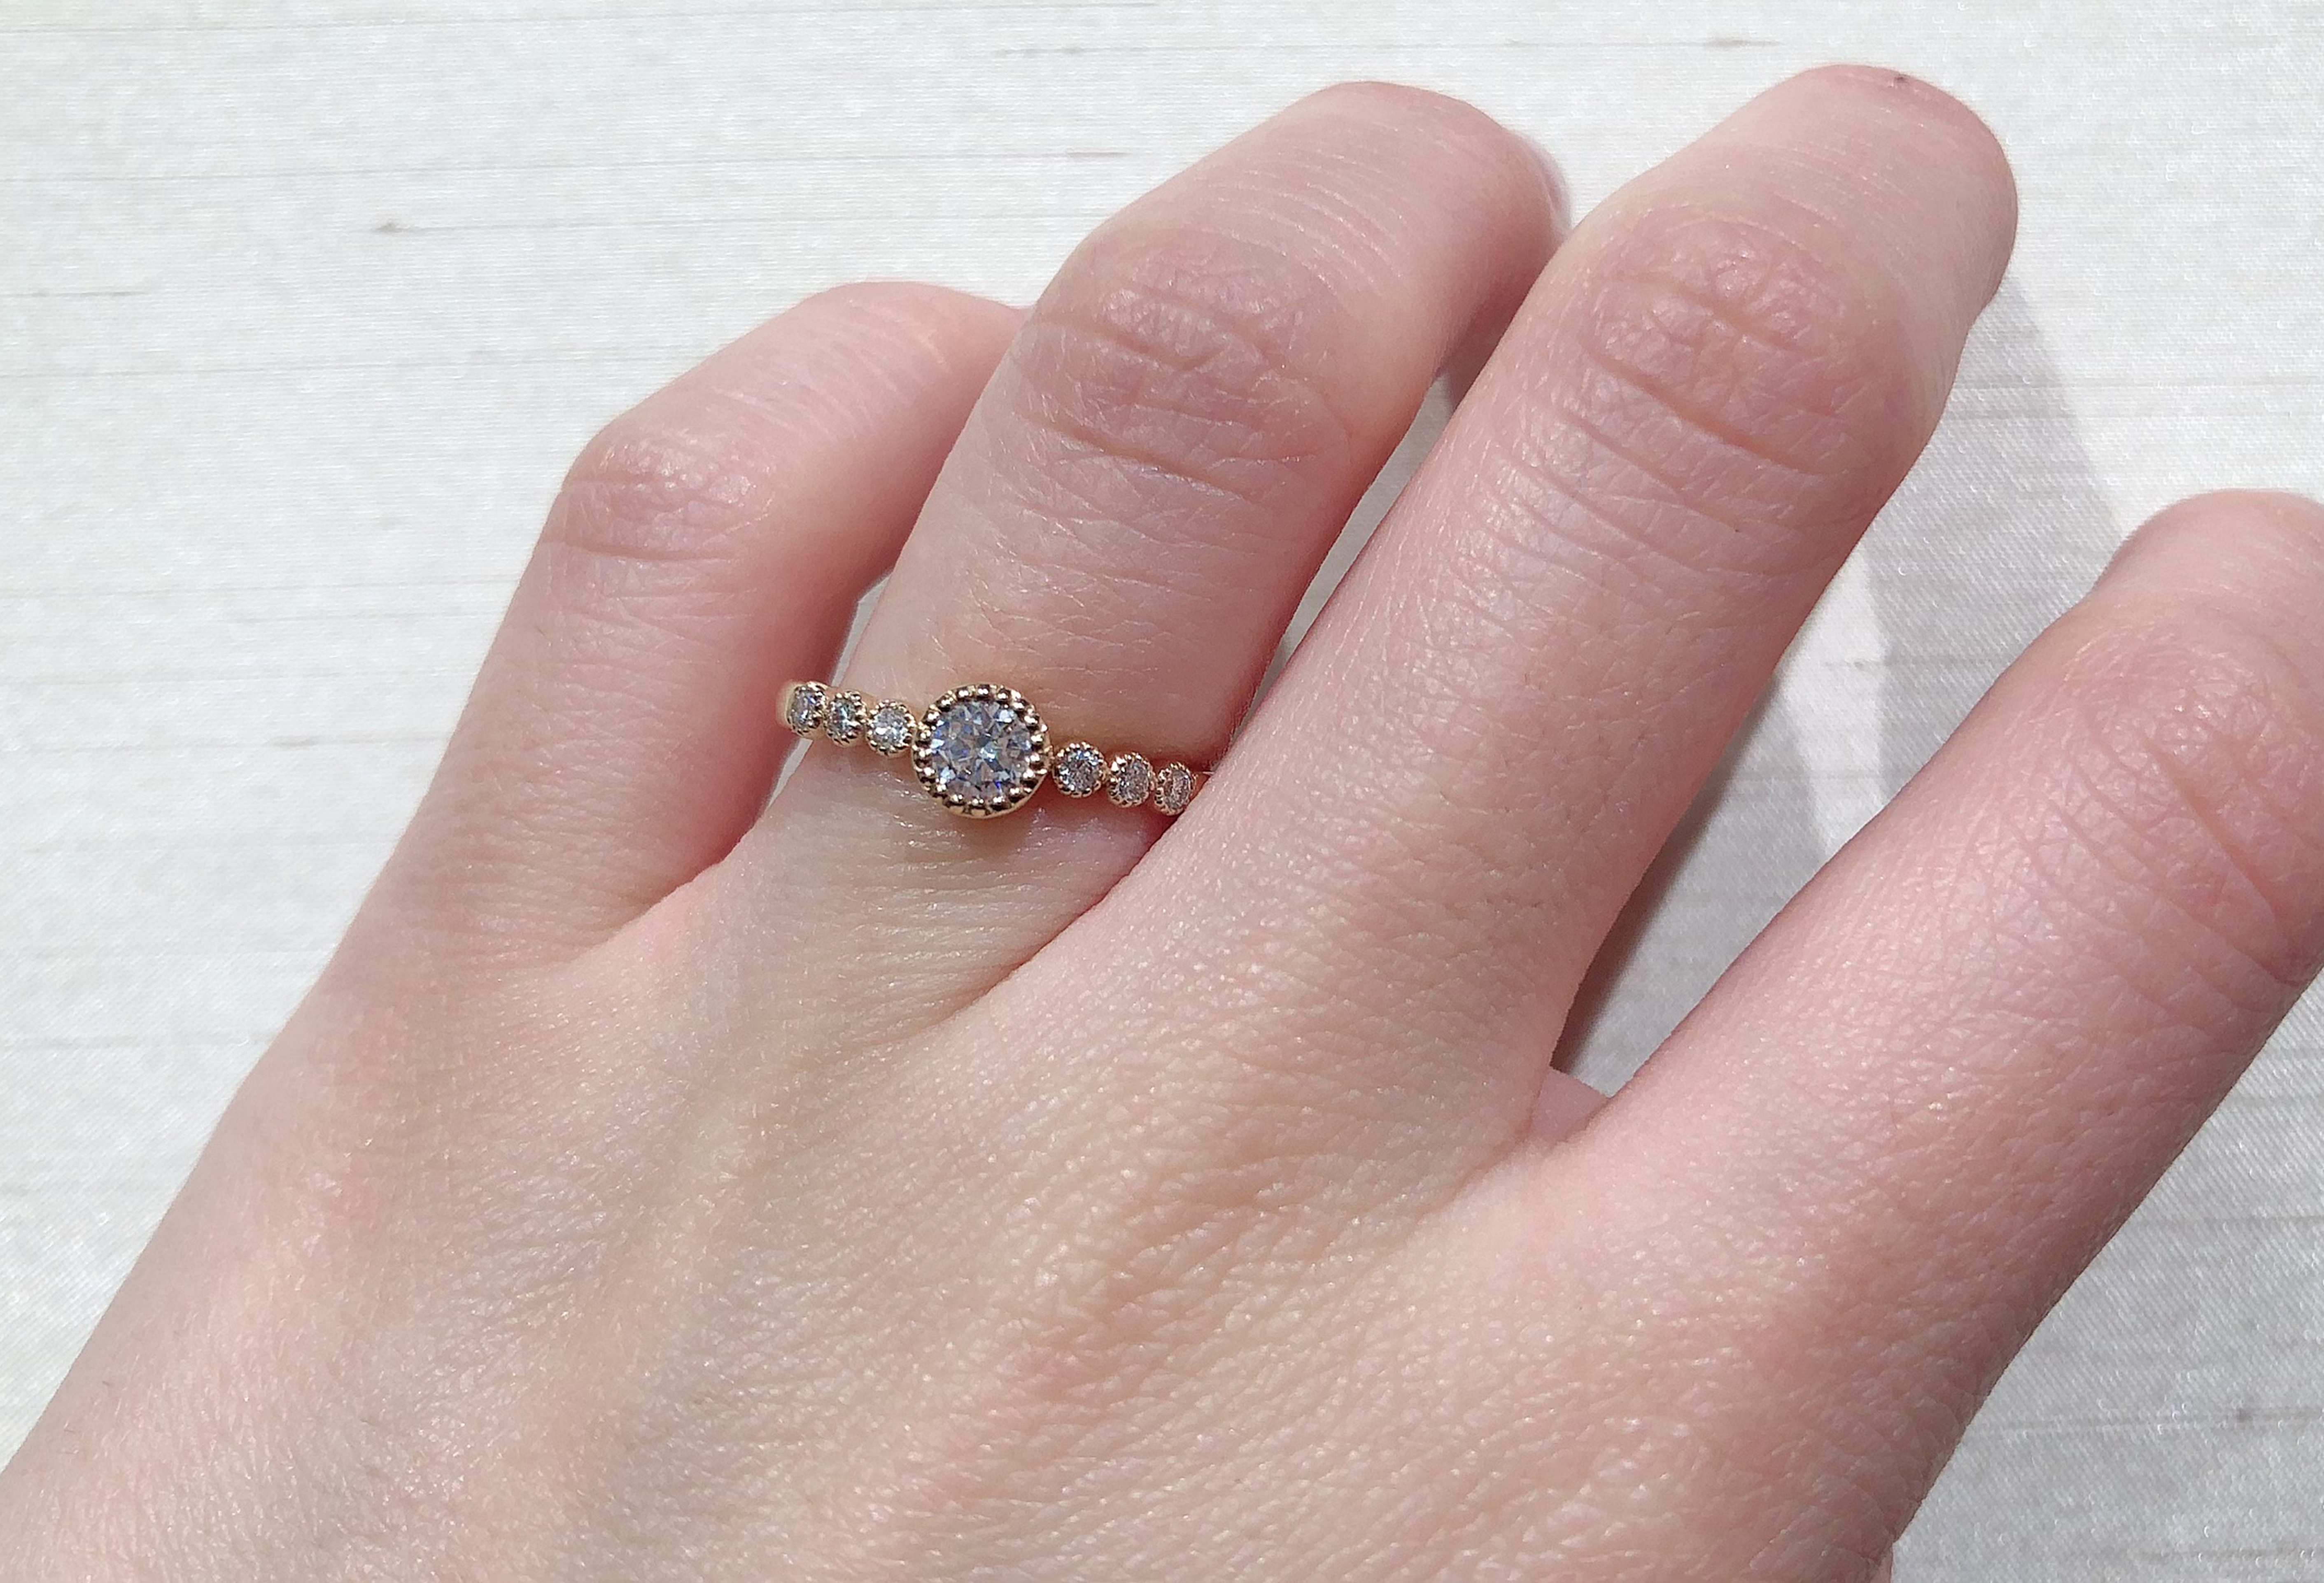 静岡市 婚約指輪も普段使い 身に着けやすい婚約指輪デザイン Jewelry Story ジュエリーストーリー ブライダル情報 婚約指輪 結婚指輪 結婚式場情報サイト